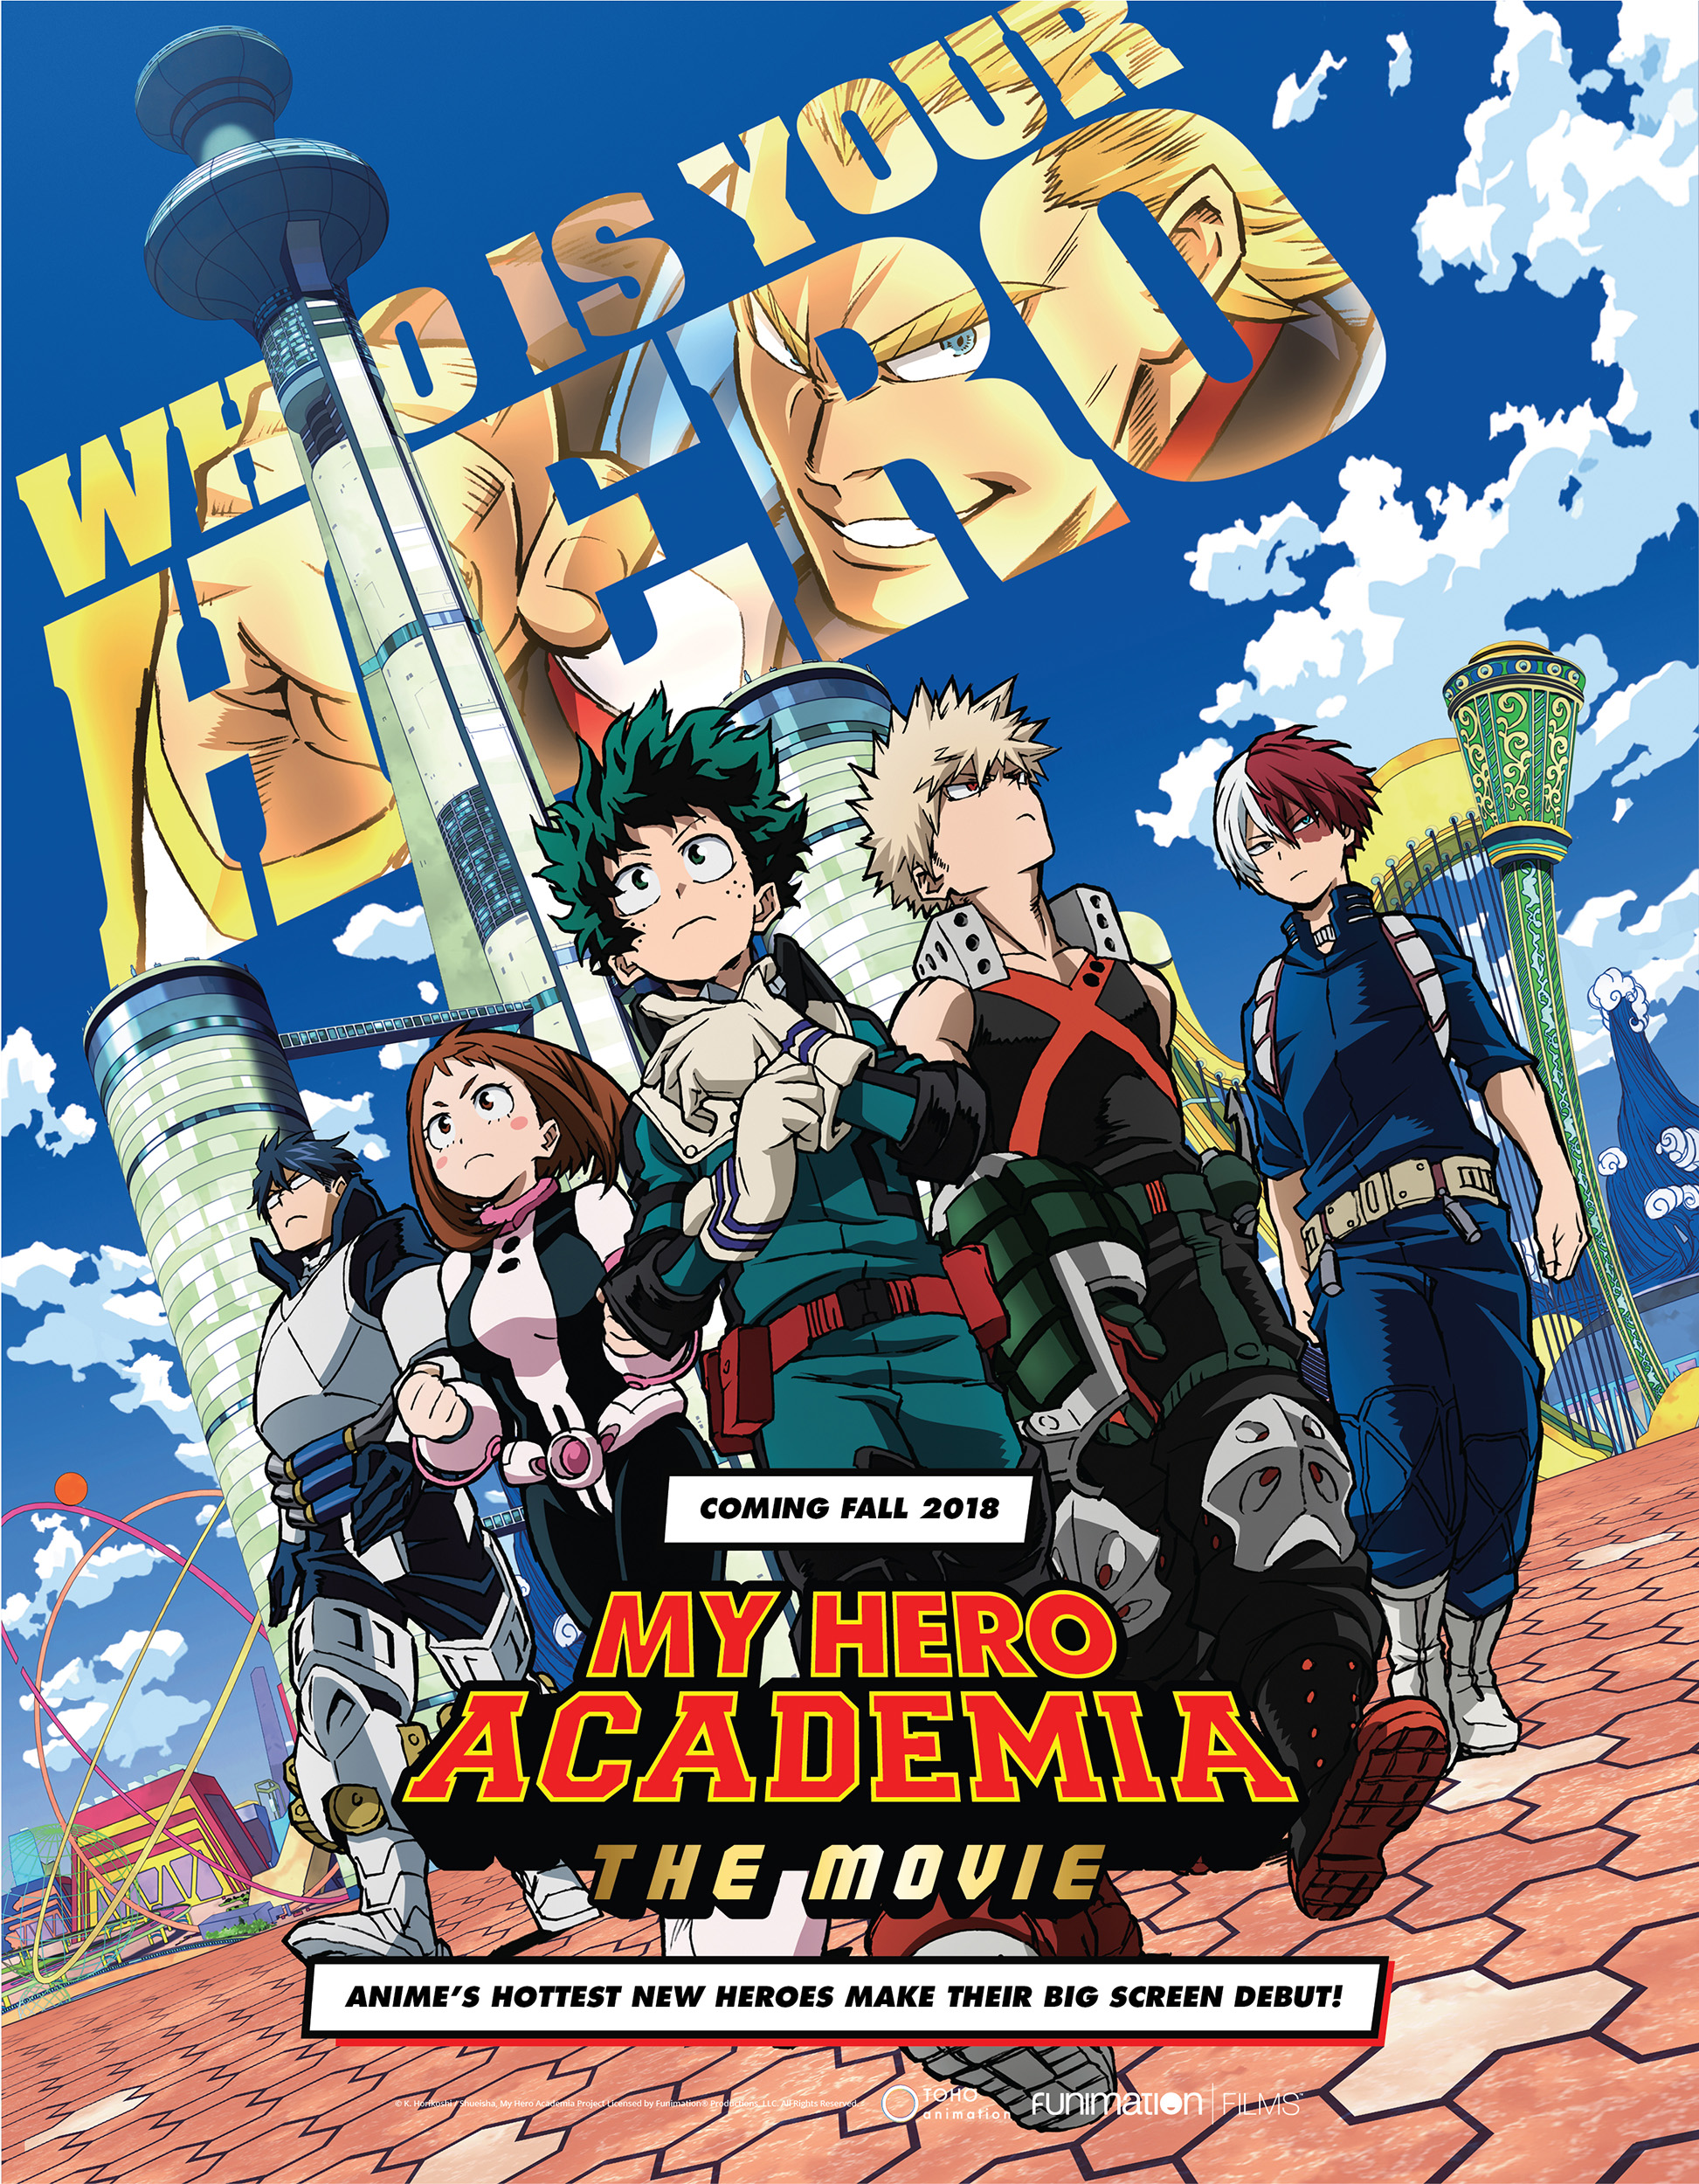 My Hero Academia: The Movie' Officially Announced By Shueisha